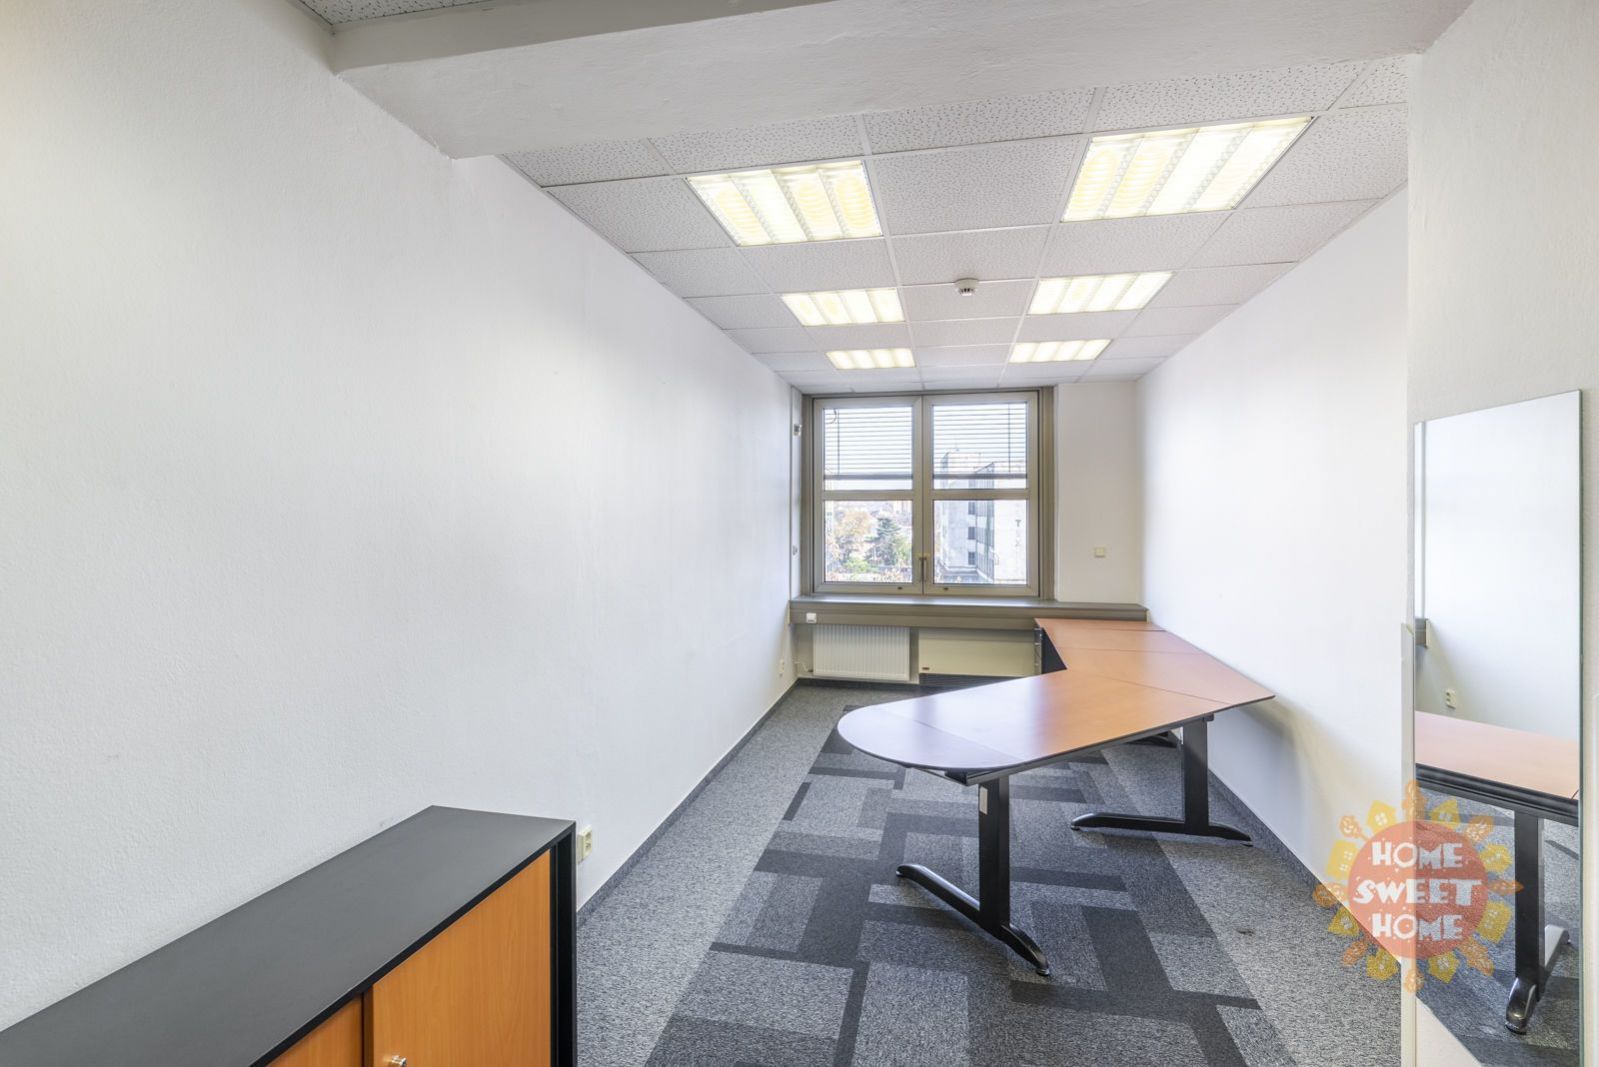 Speciální nabídka, kancelářské prostory k pronájmu (470m2) v areálu Green park, bez provize RK., obrázek č. 2